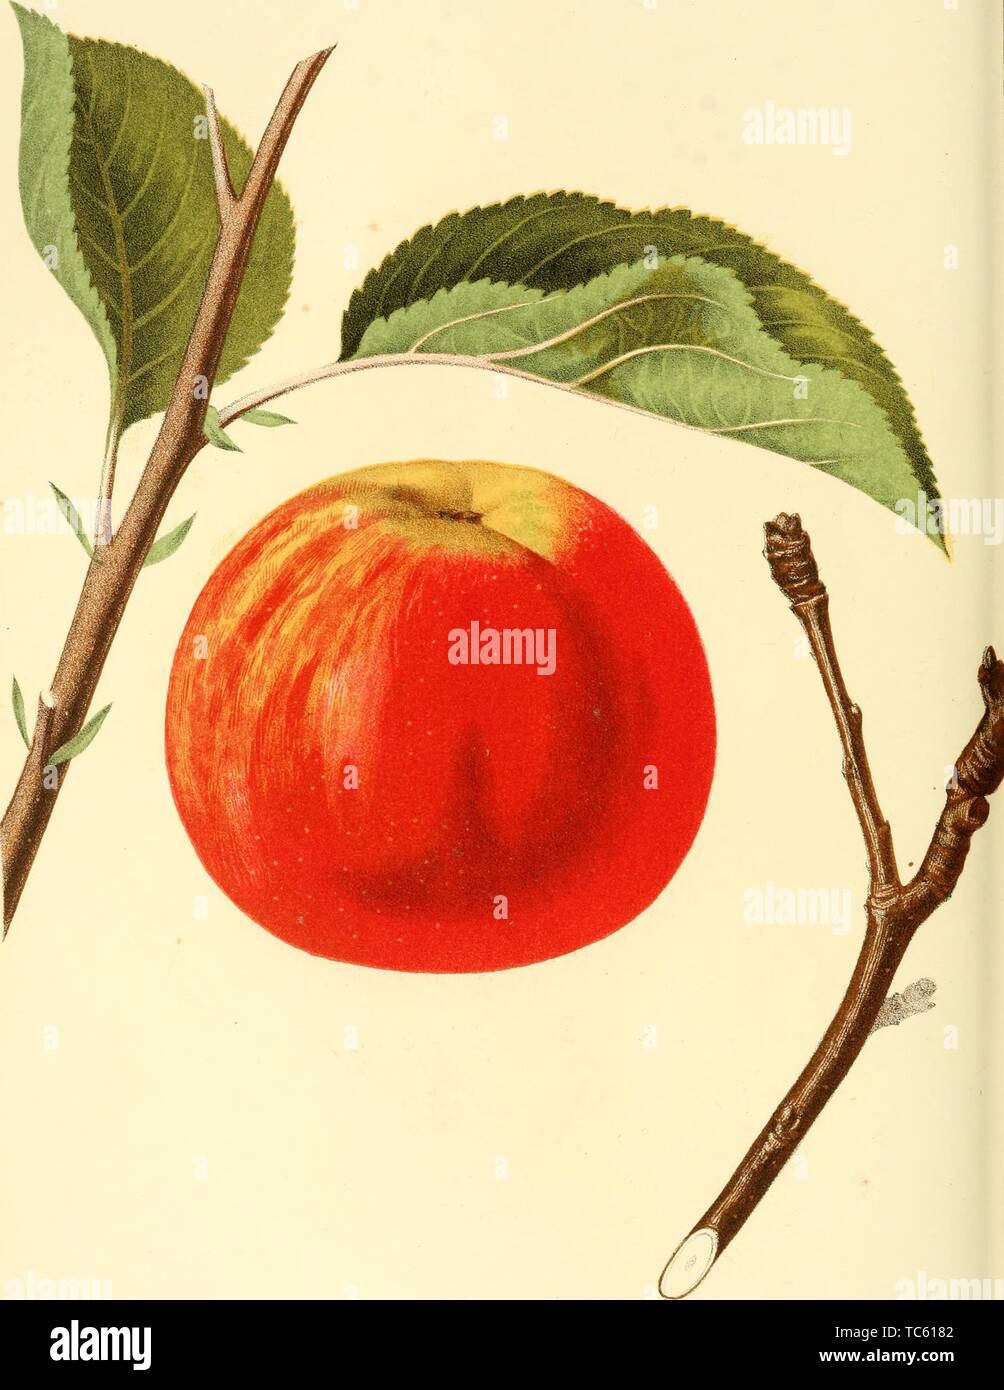 Grabado de la Cogswell Apple, del libro "Los frutos de América" por Charles  Mason Hovey, 1848. Cortesía de Internet Archive Fotografía de stock - Alamy